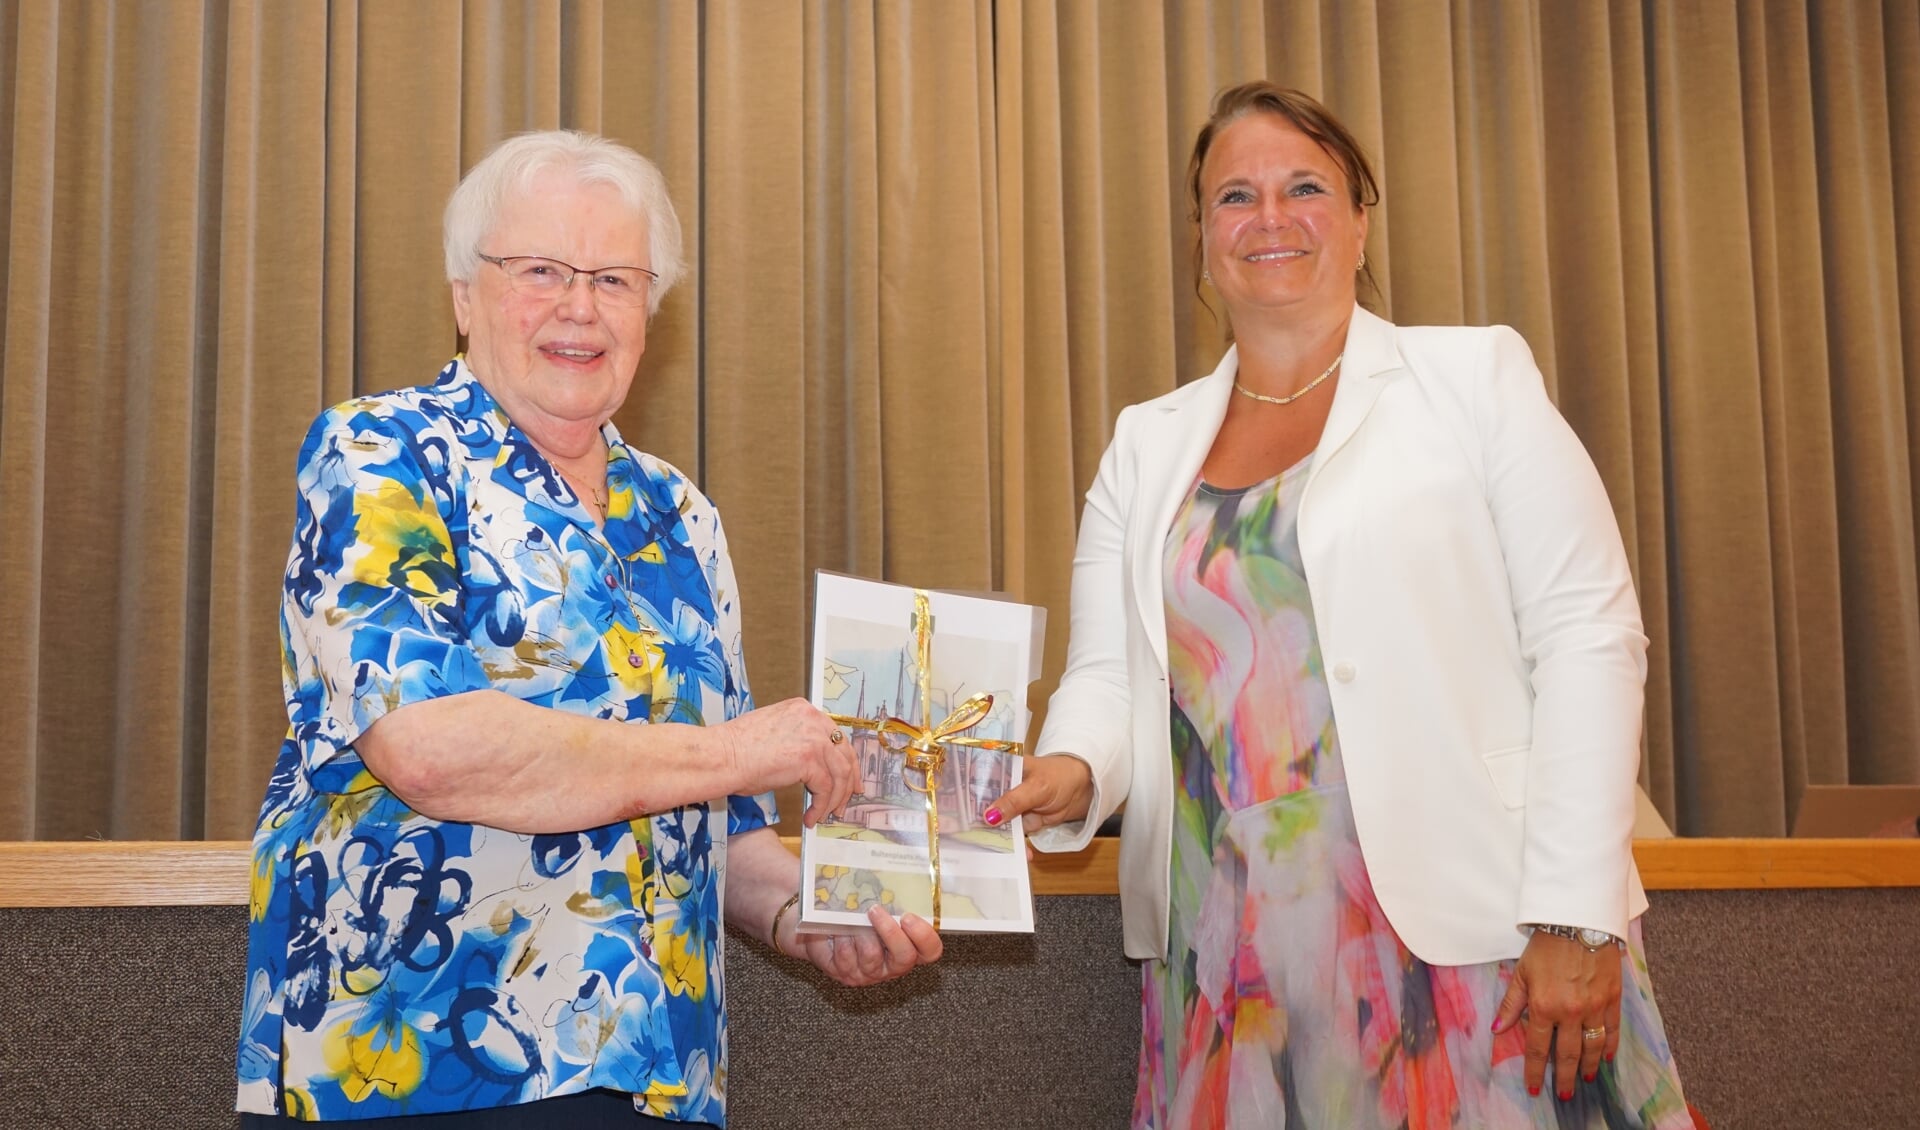 Zuster Regina overhandigde de allereerste brochure met het visiedocument aan burgemeester Stemerdink. 